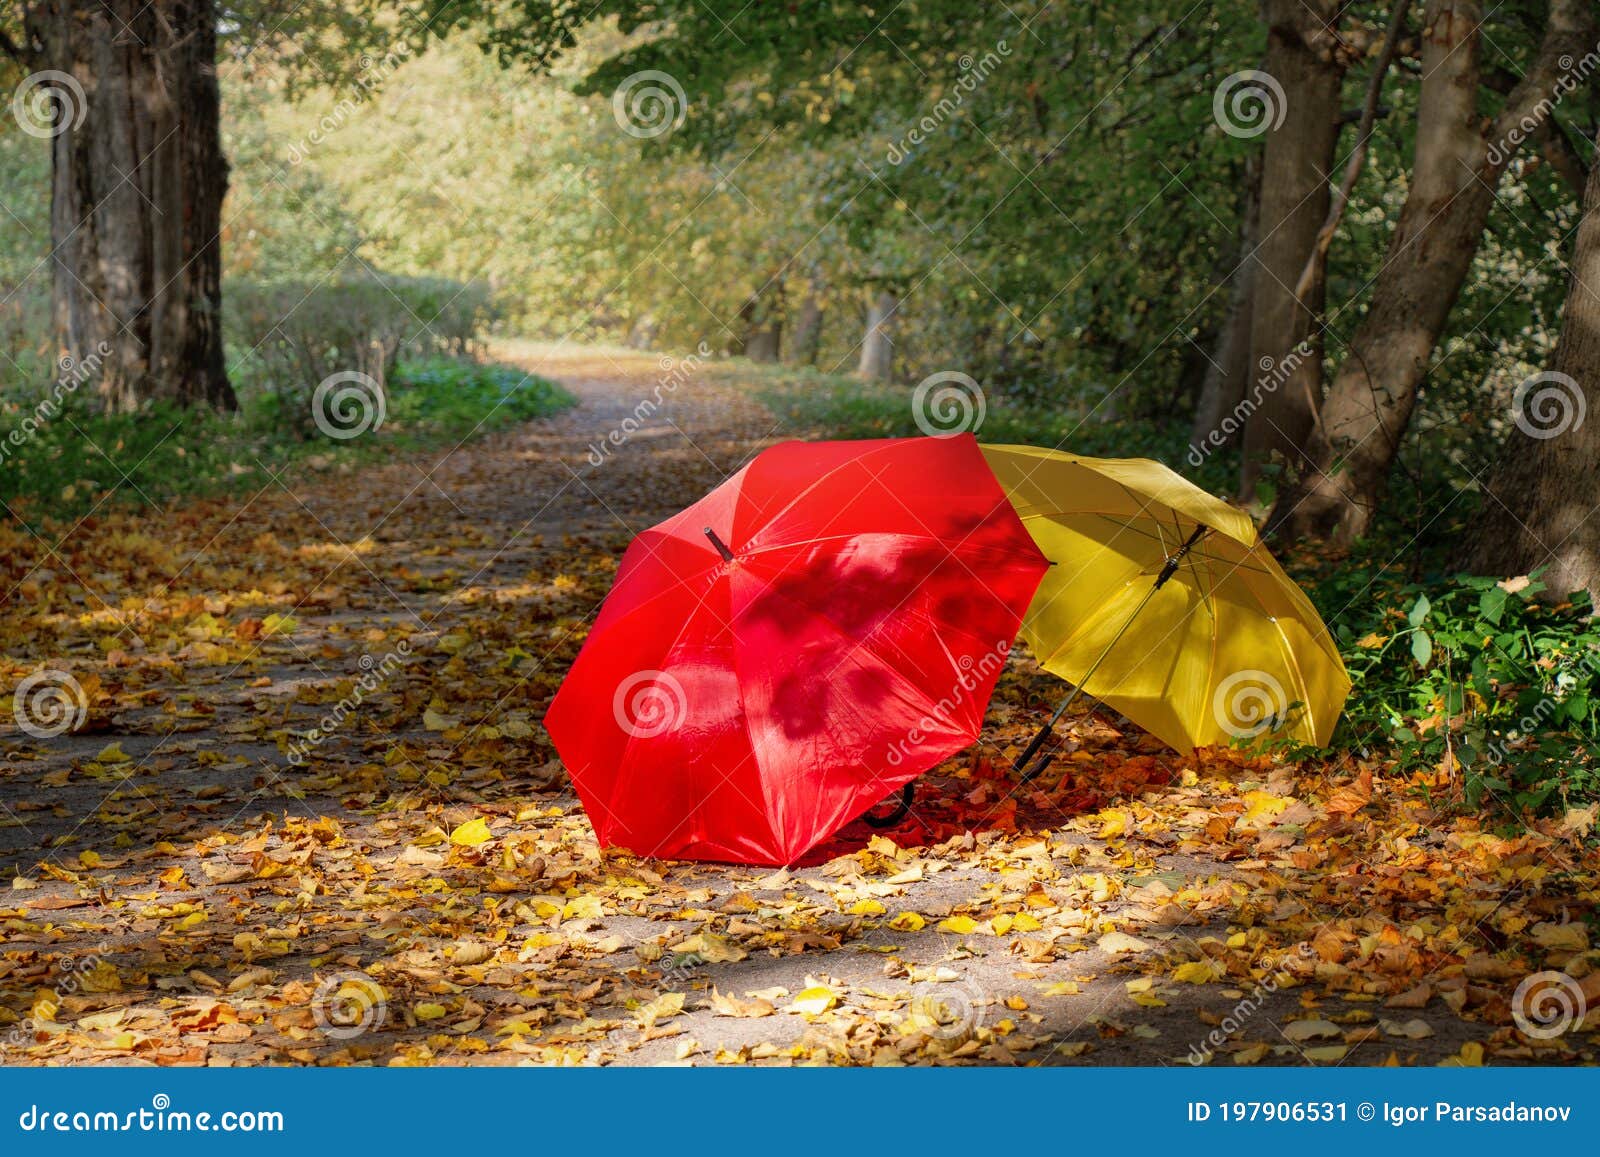 Осенние Фото С Красным Зонтом